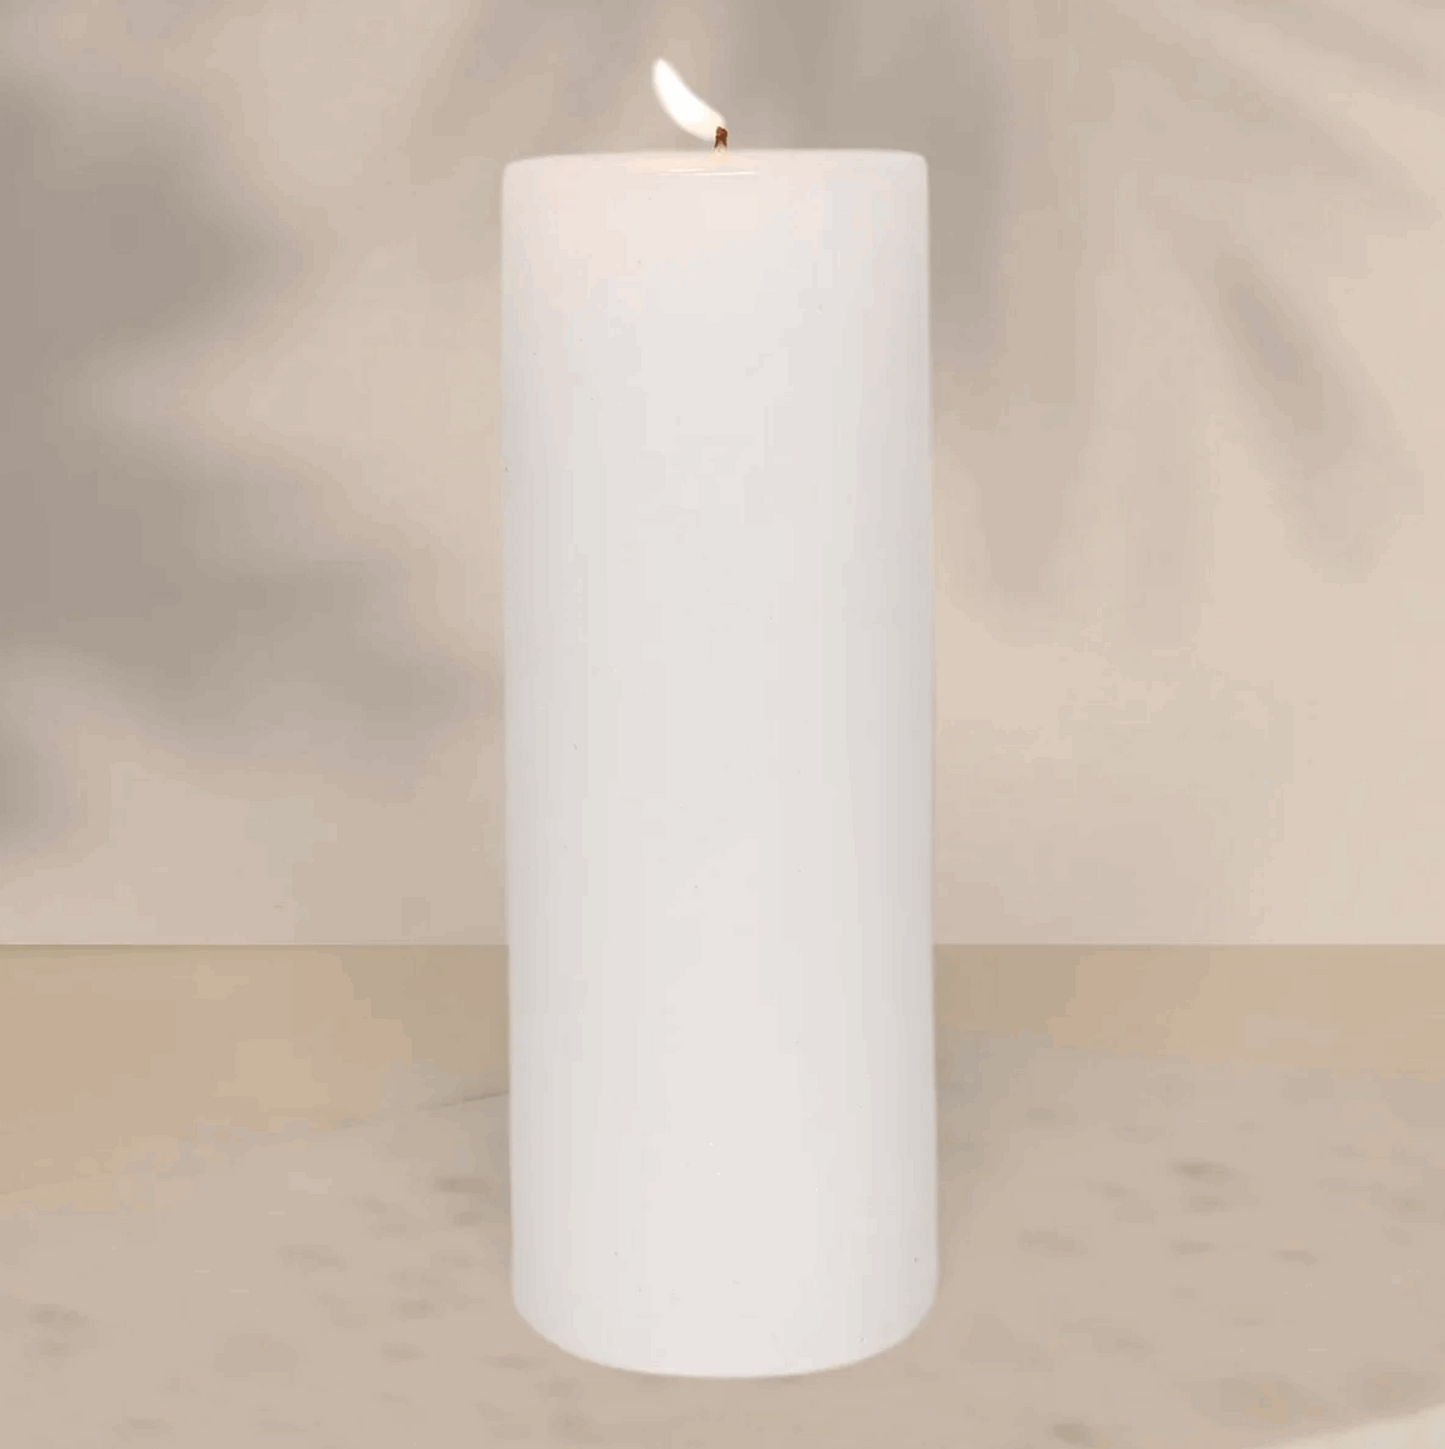 Big white pillar candle